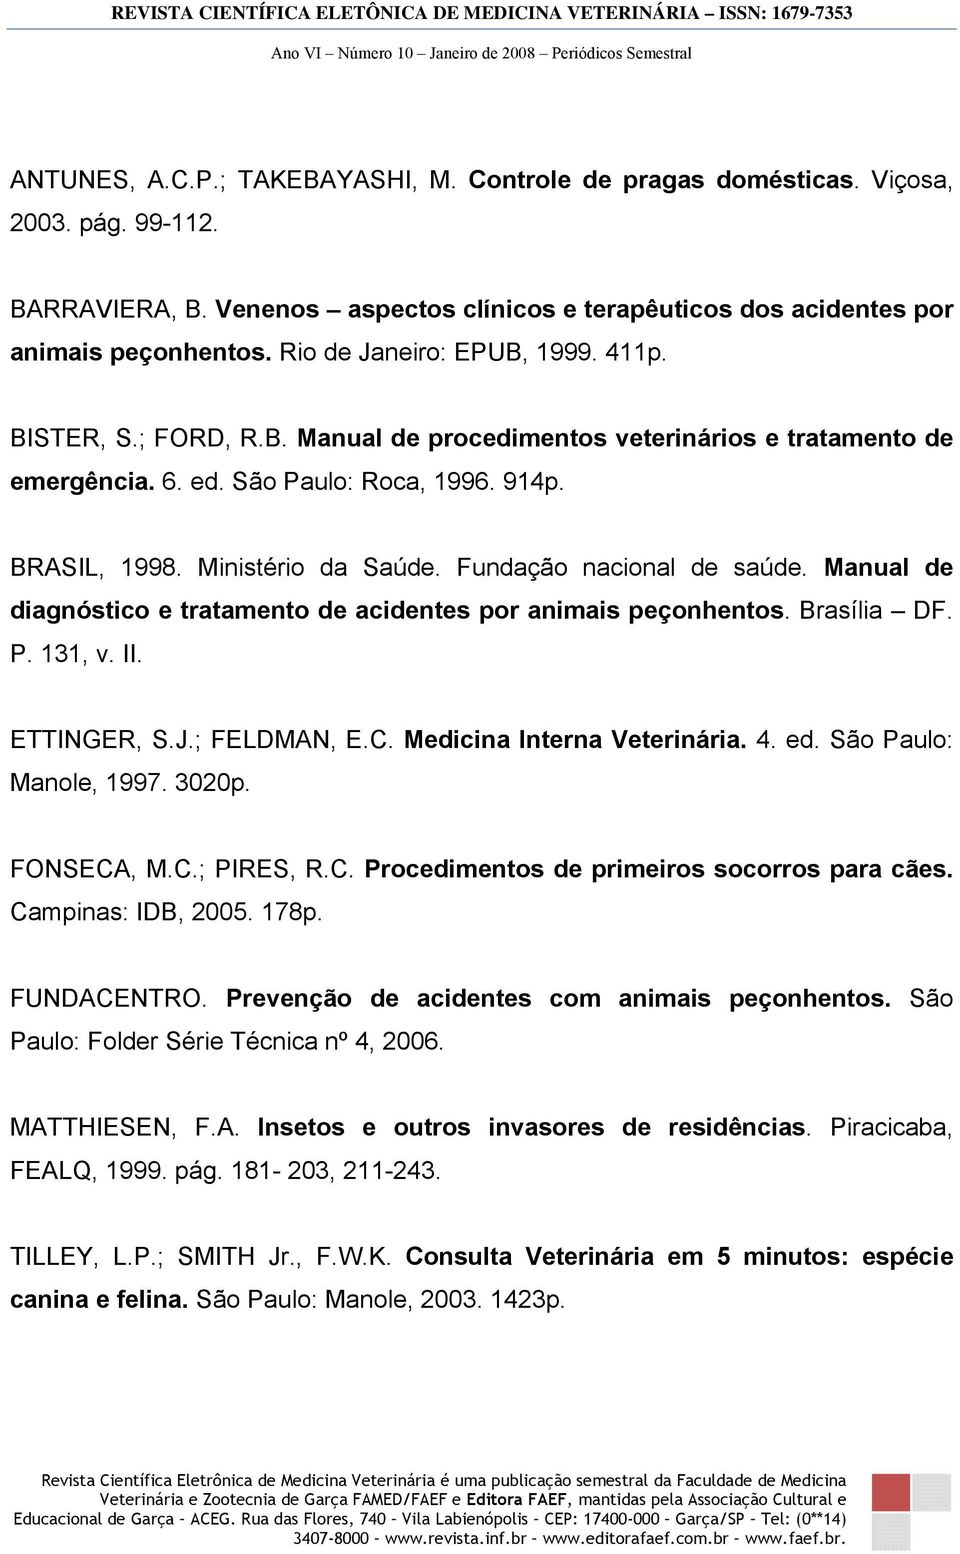 Fundação nacional de saúde. Manual de diagnóstico e tratamento de acidentes por animais peçonhentos. Brasília DF. P. 131, v. II. ETTINGER, S.J.; FELDMAN, E.C. Medicina Interna Veterinária. 4. ed.